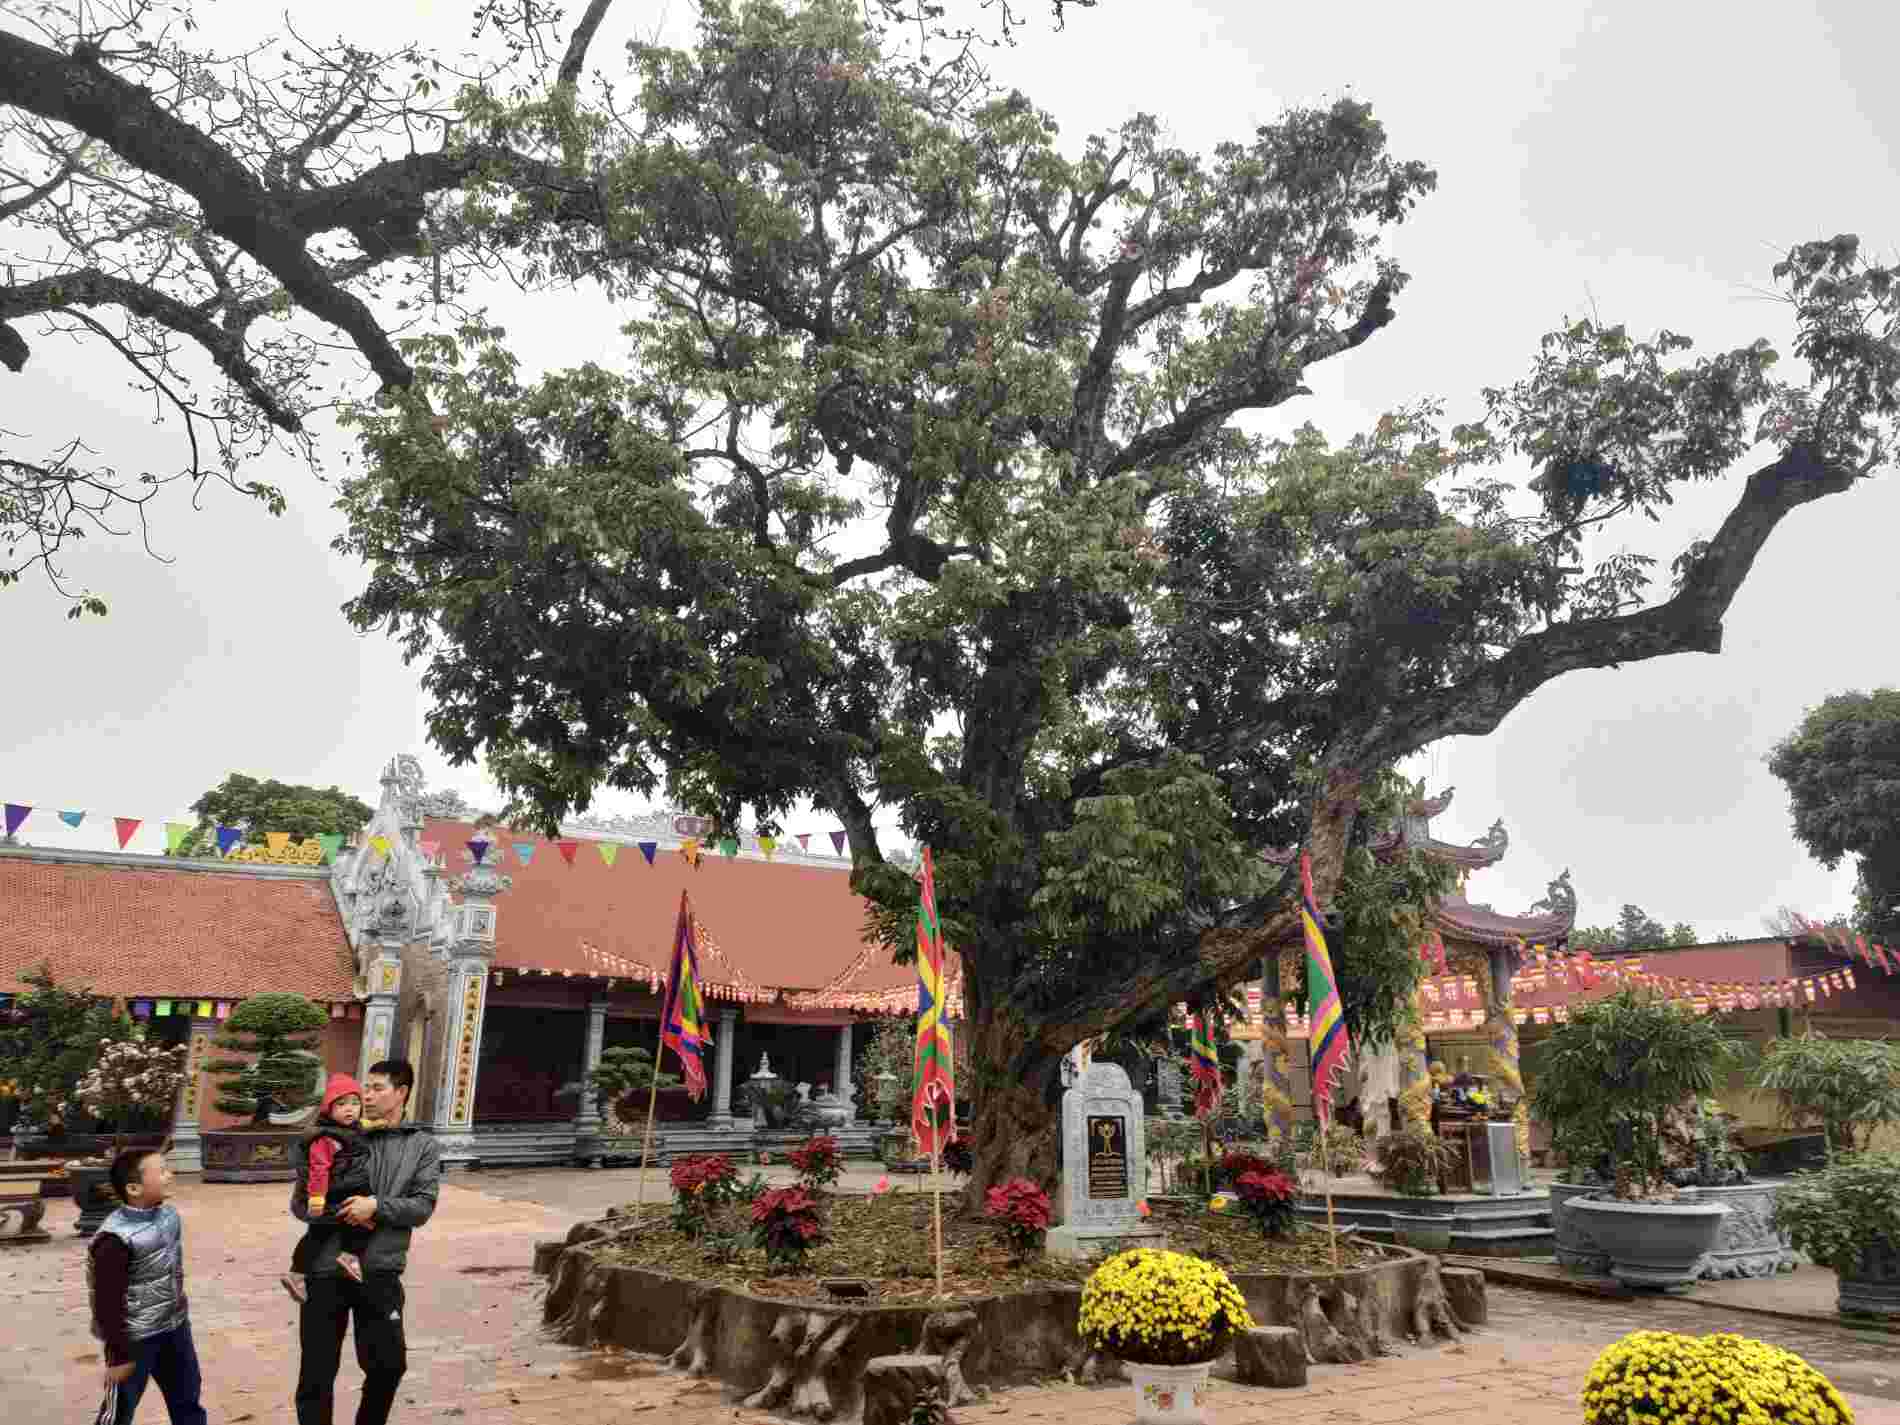 Nằm song song với cây gạo di sản là cây nhãn cổ thụ có tuổi đời hơn 500 năm. Hai cây cổ thụ nằm hai bên lối đi vào đền, làm tăng thêm nét cổ kính cho ngôi đền cổ. 